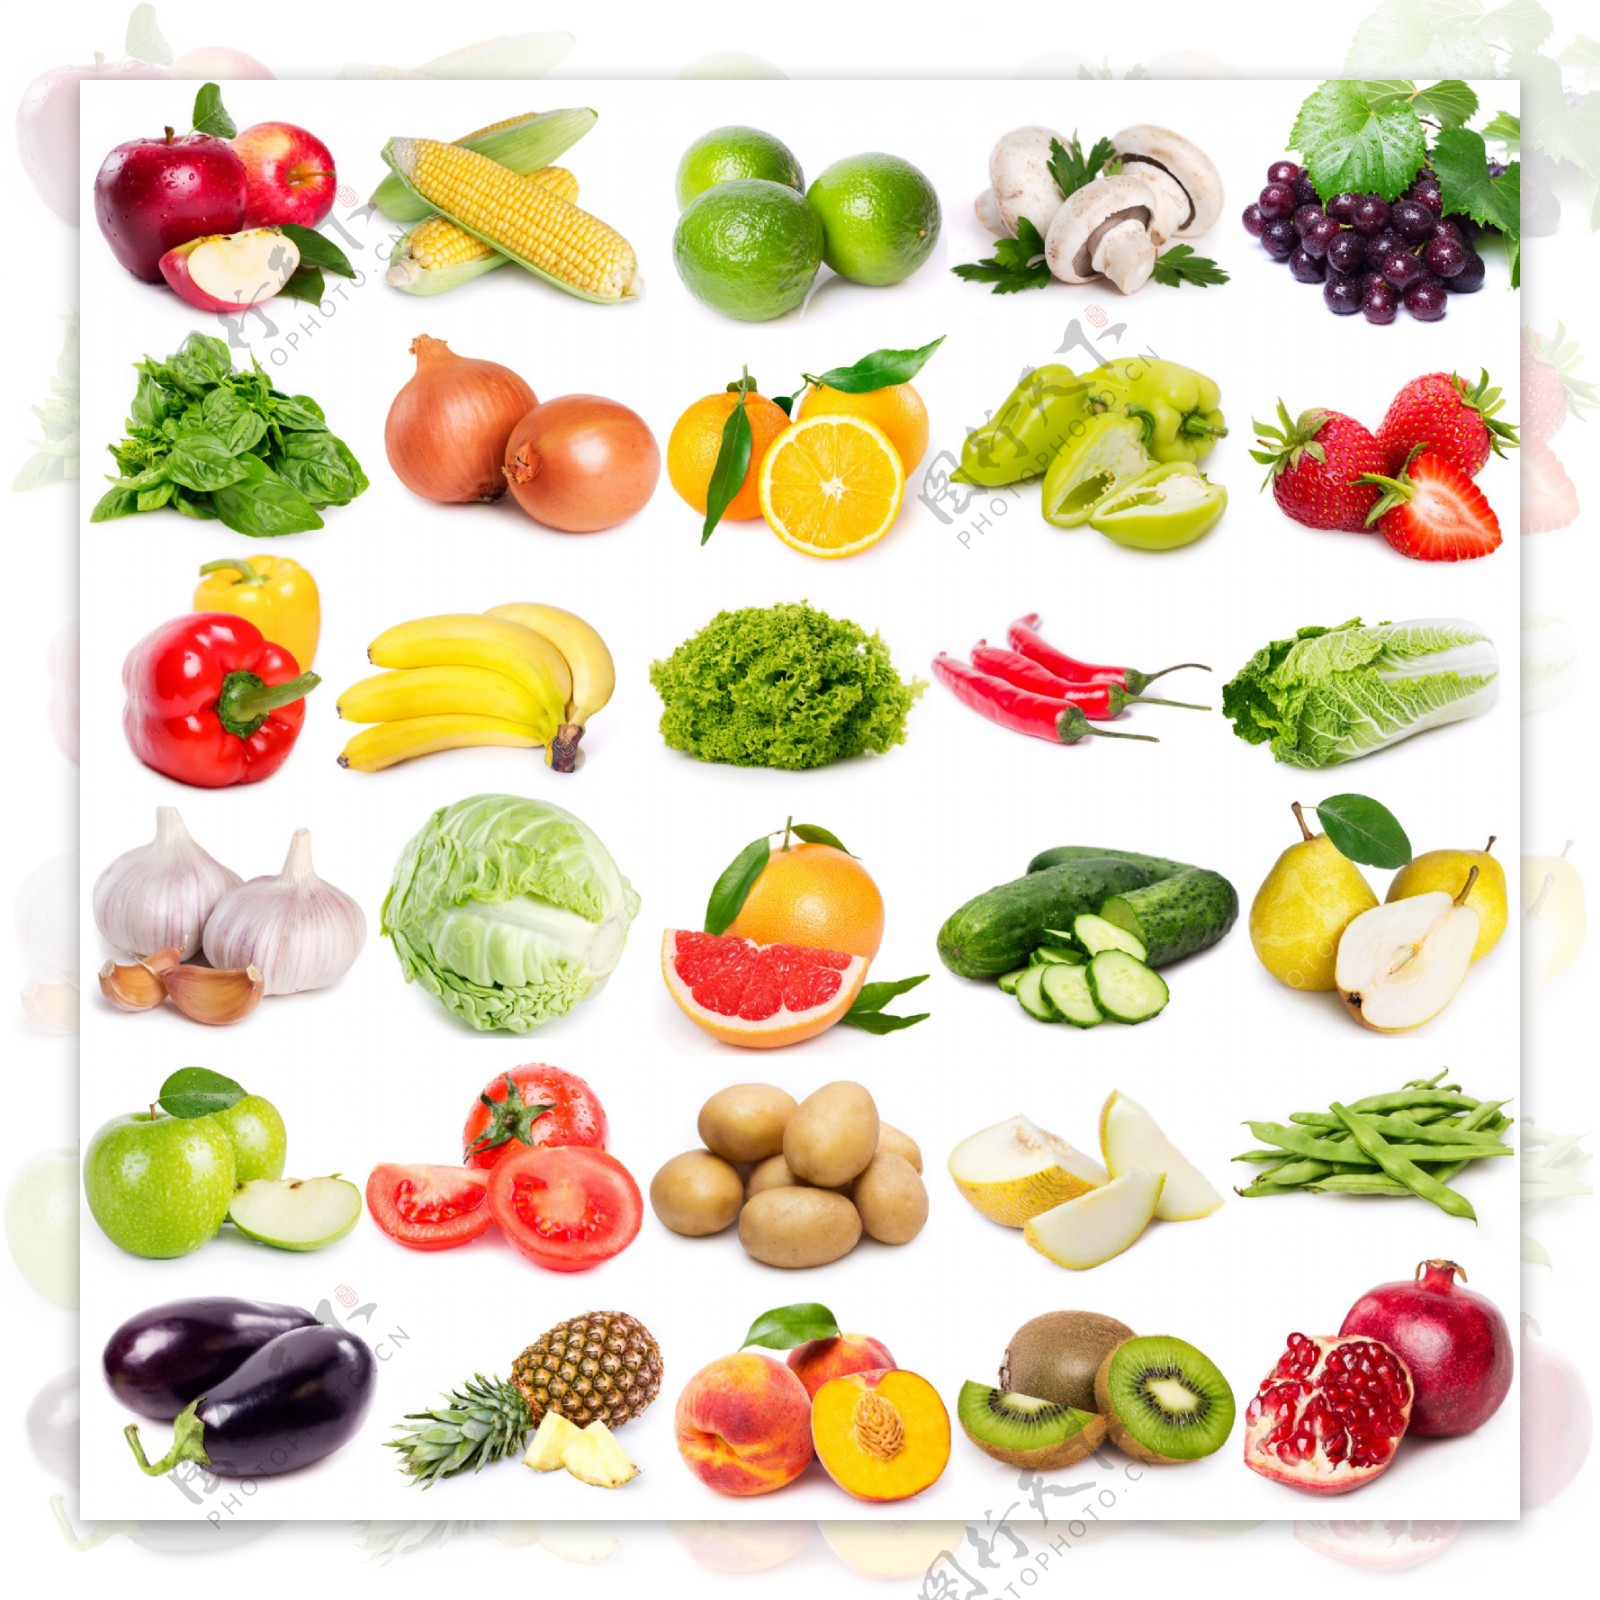 蔬菜水果摄影素材图片